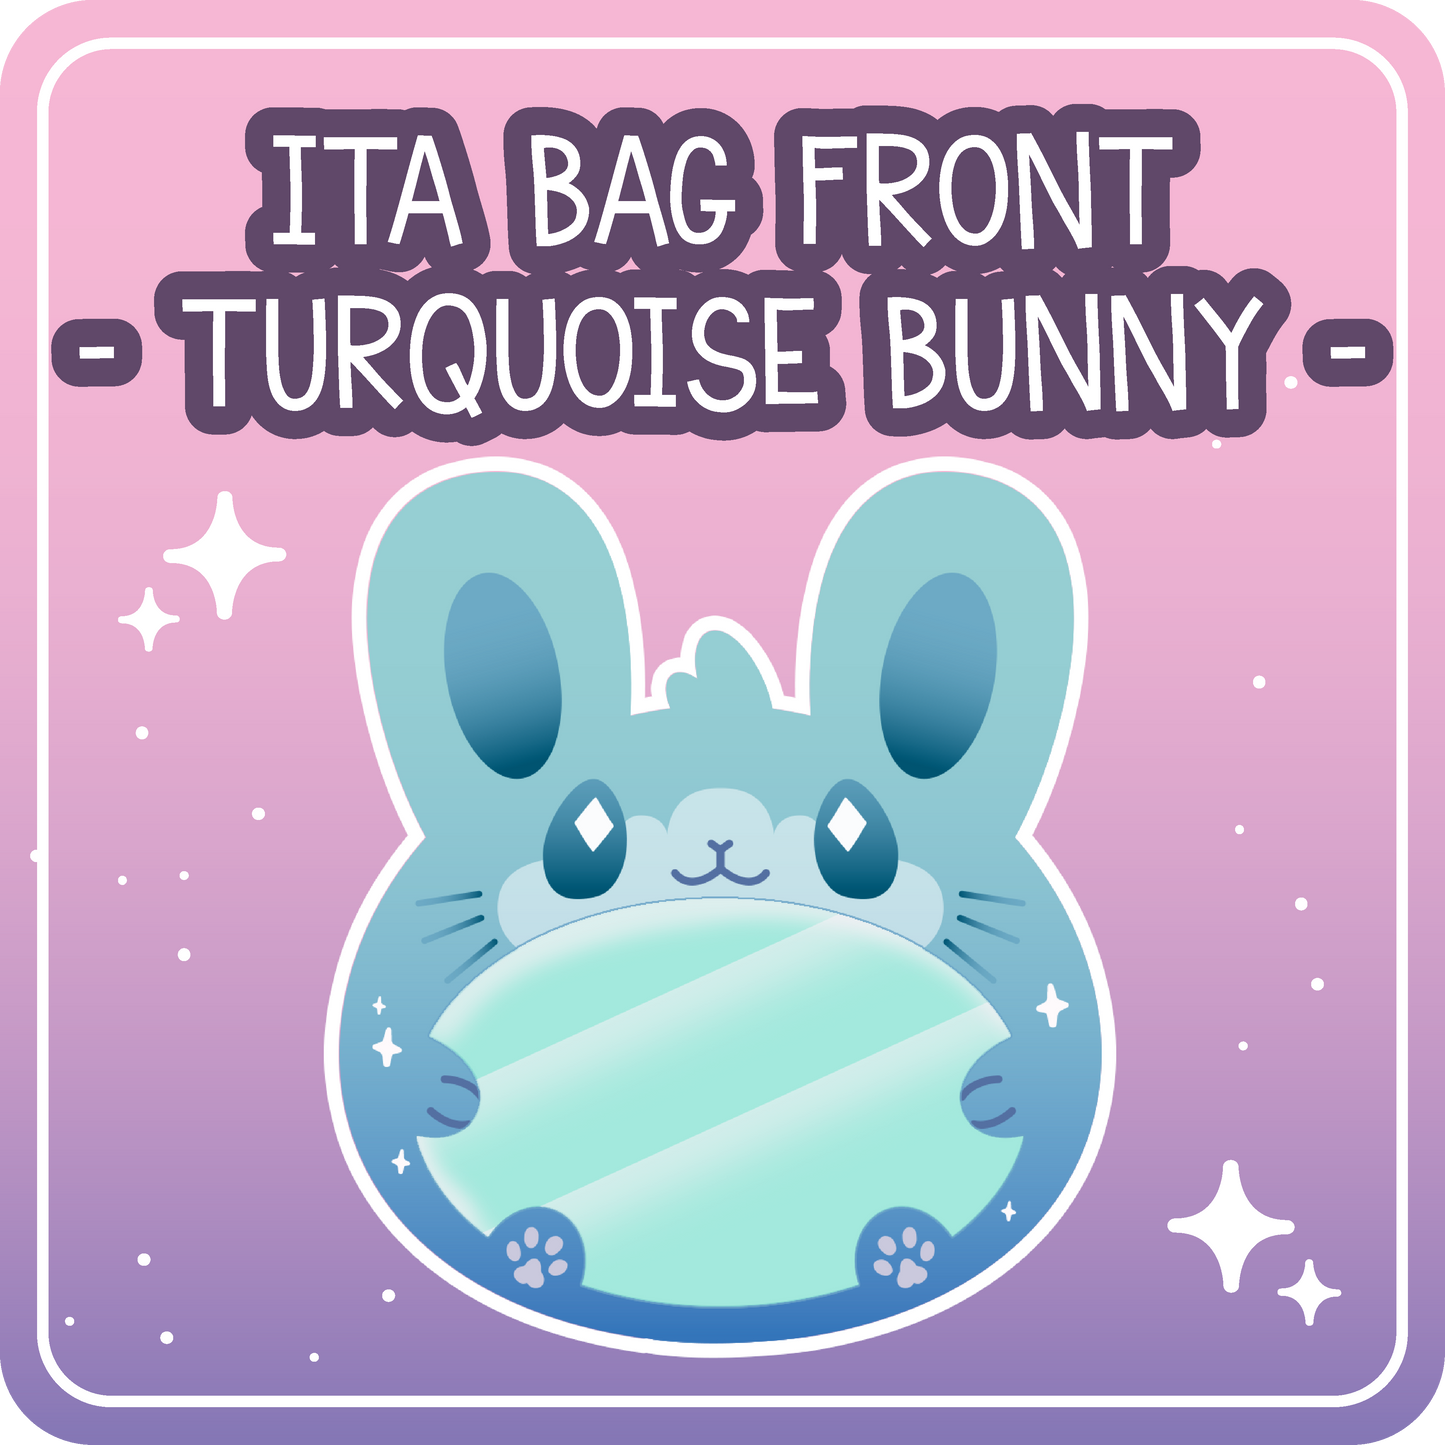 Kawaii Kompanions Ita Bag Bundle Teal Bunny